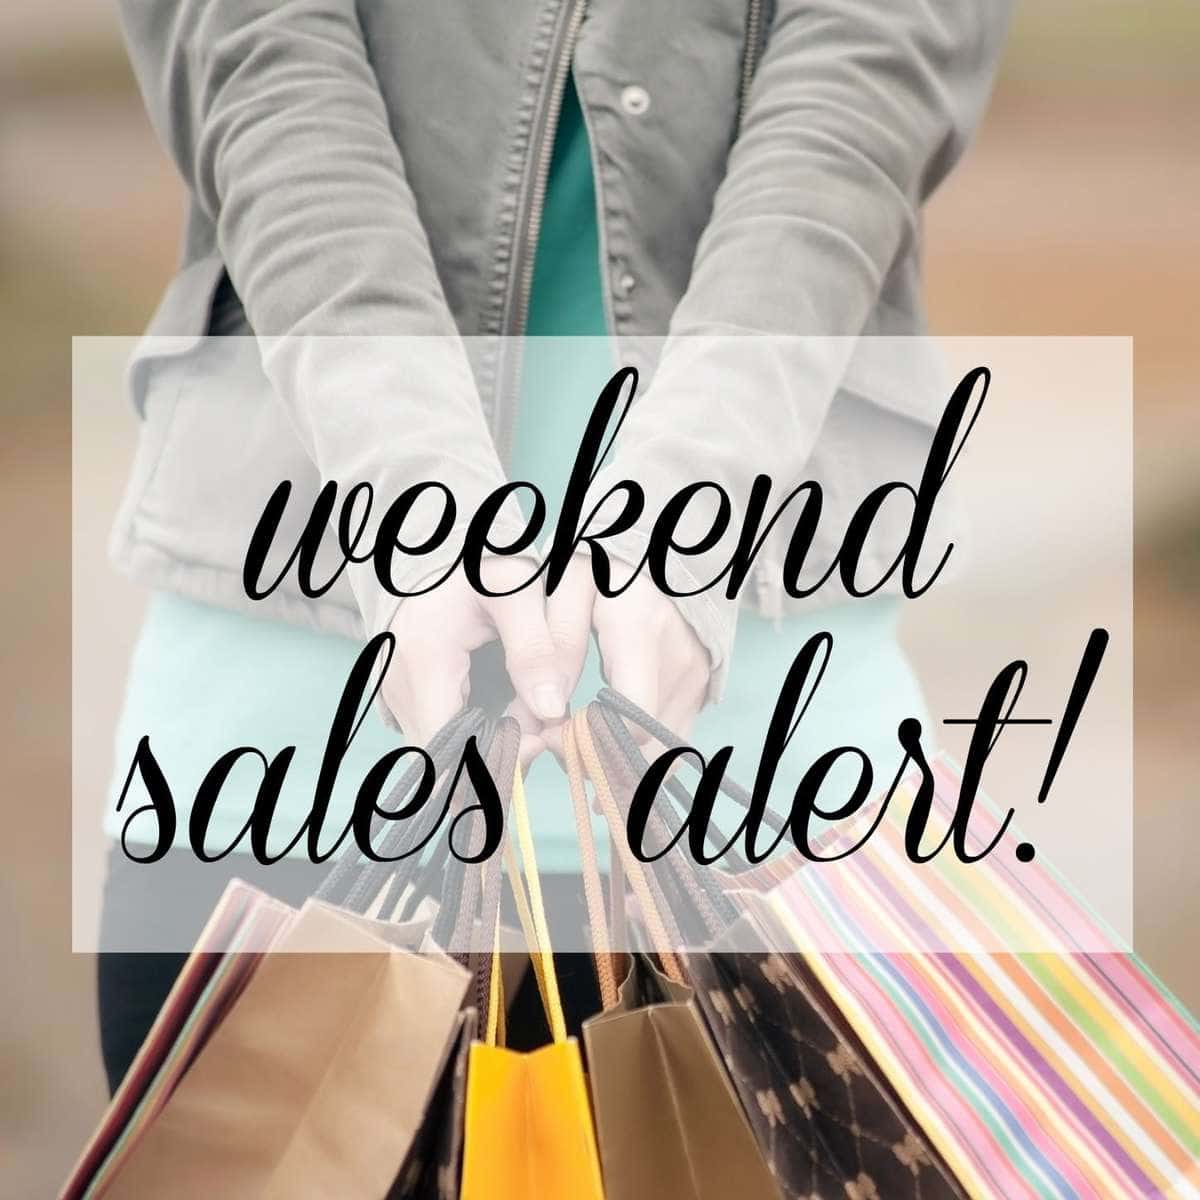 Weekend Sales Alert